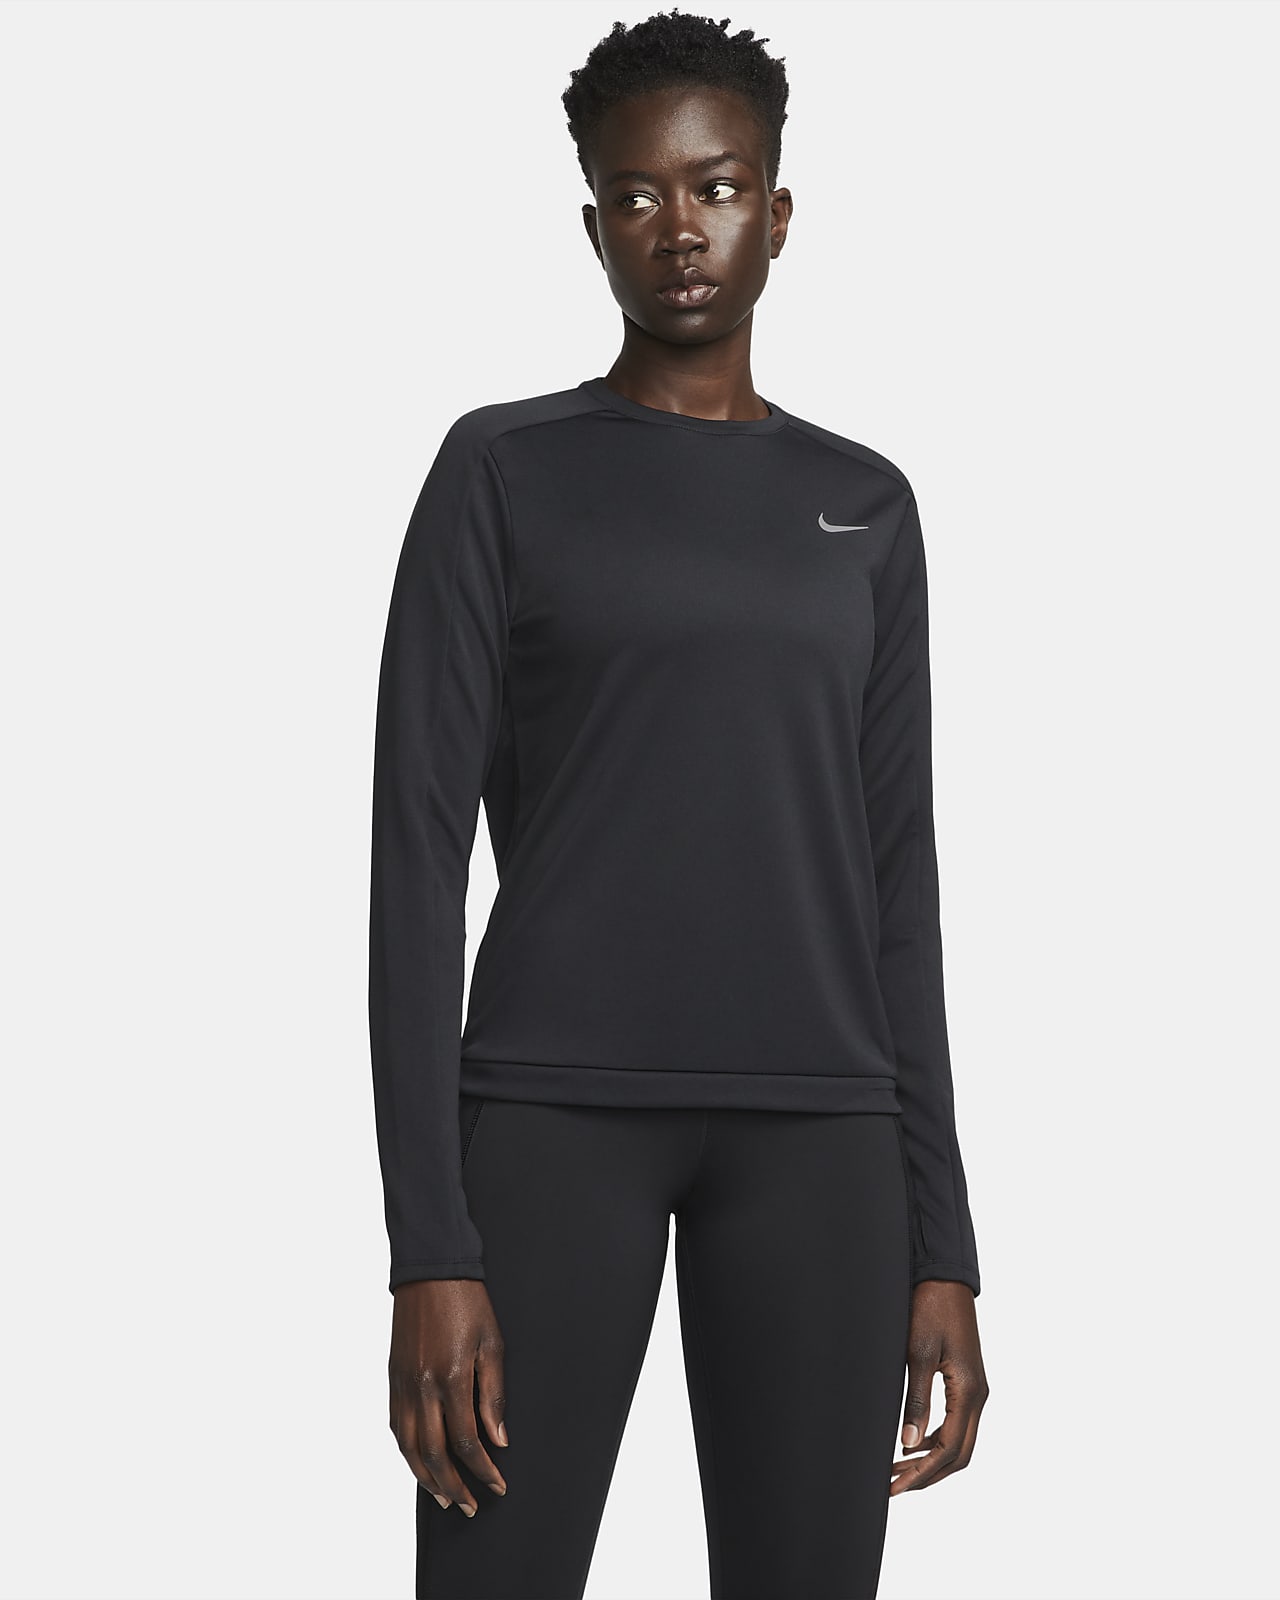 Damska koszulka z półokrągłym dekoltem do biegania Nike Dri-FIT